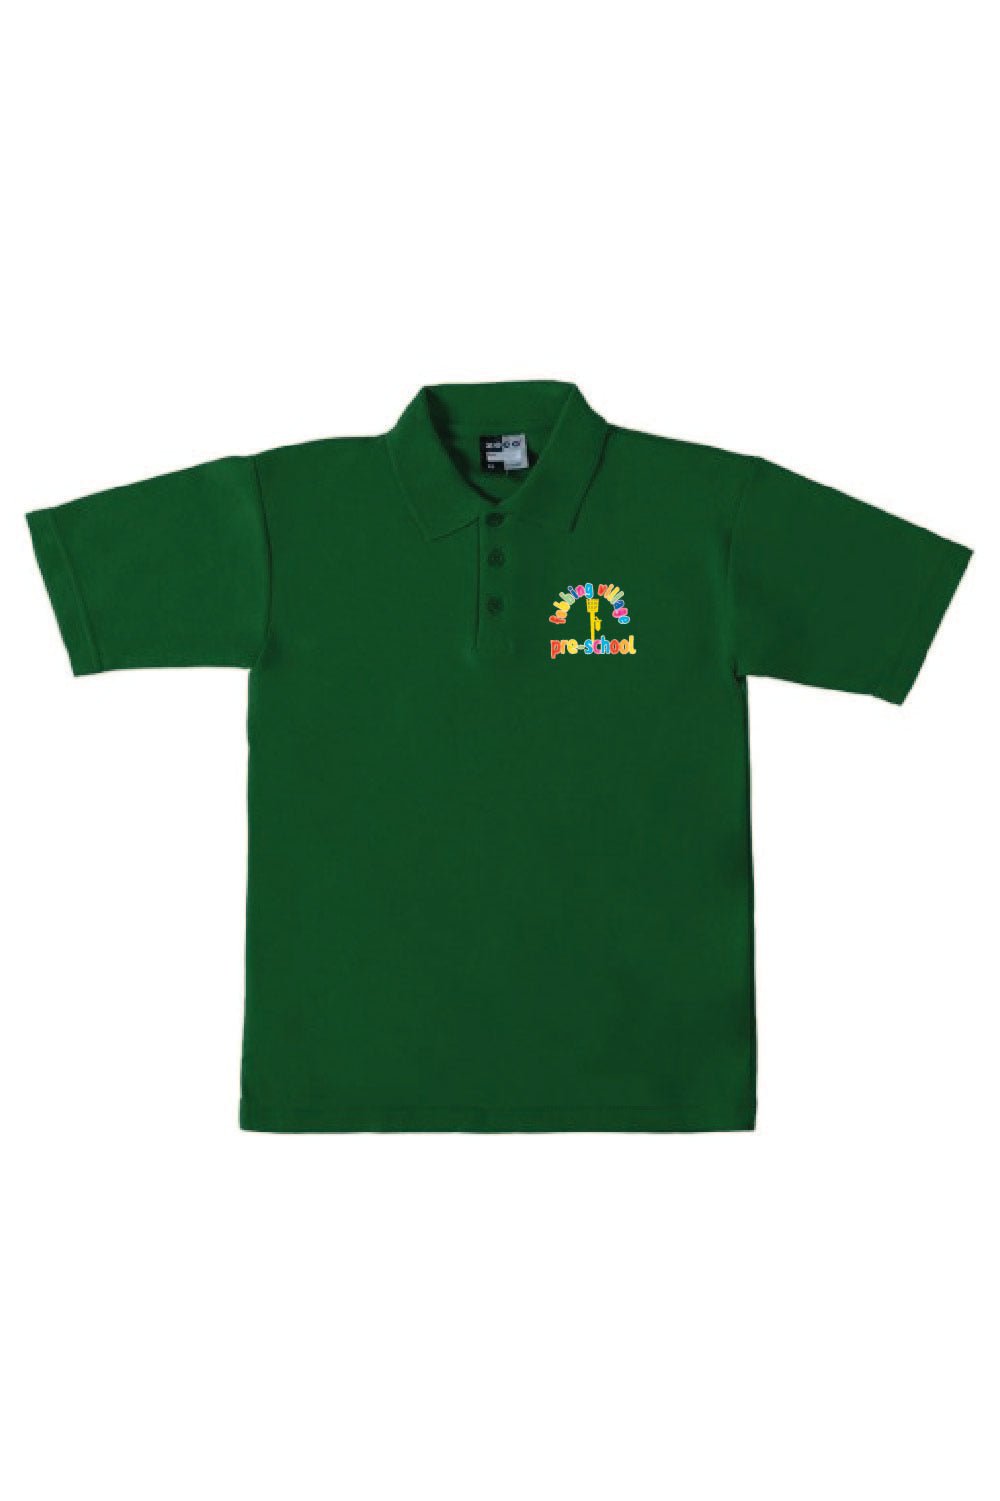 Fobbing Preschool Polo Shirt - Uniformwise Schoolwear